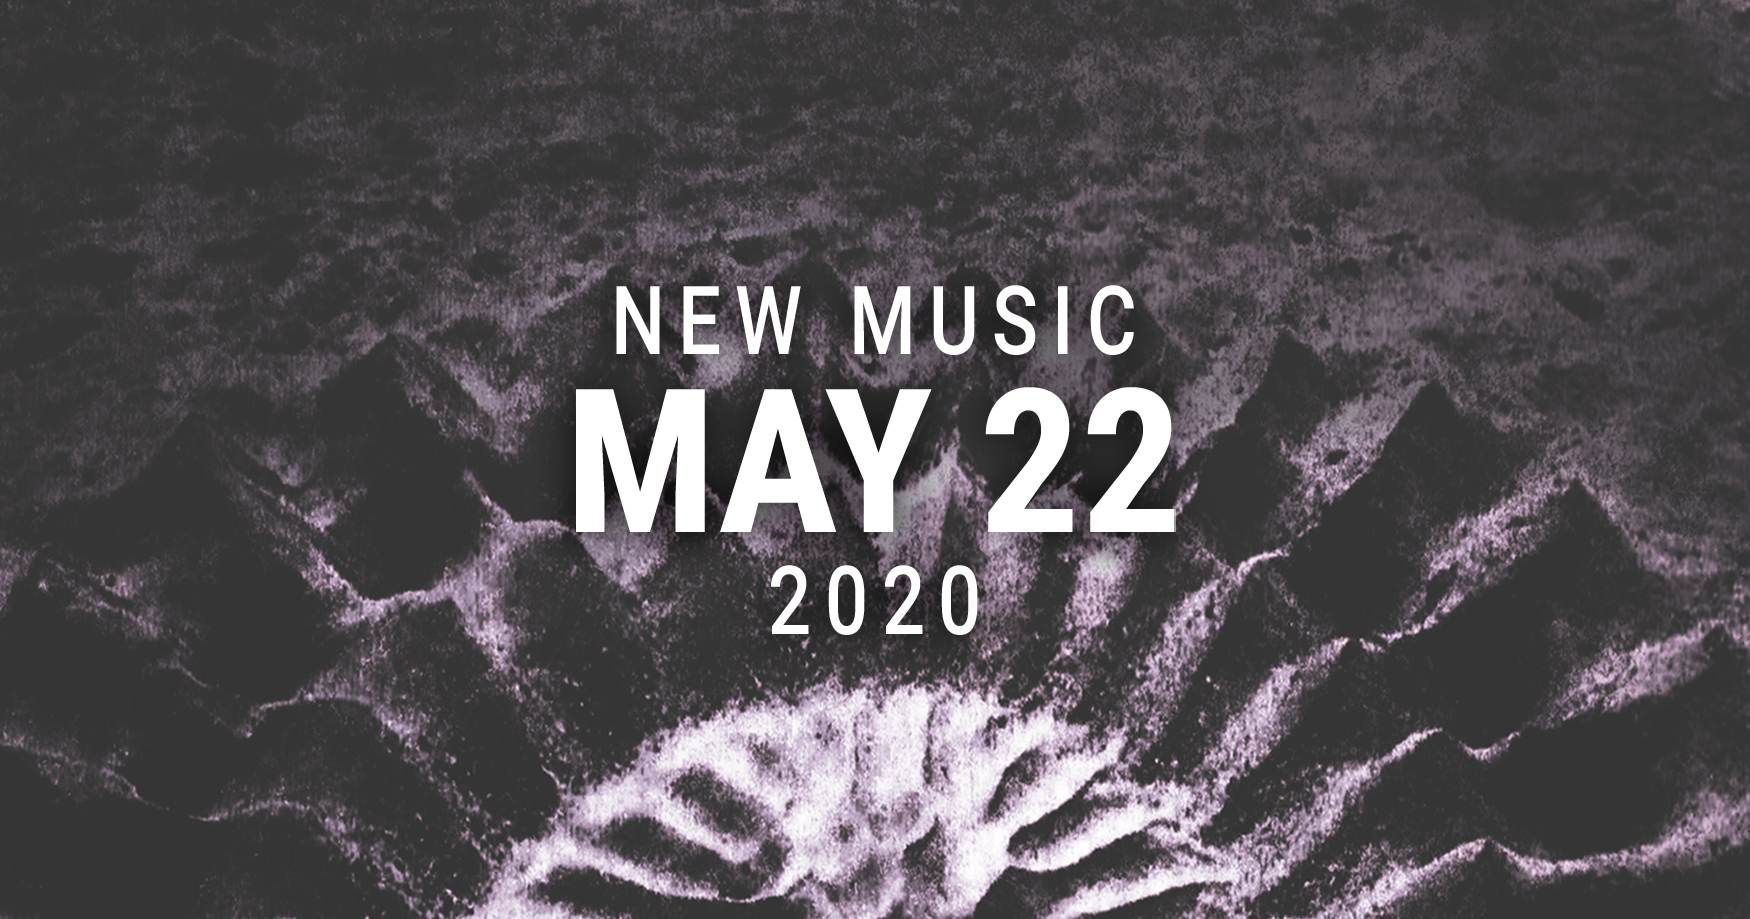 New Music May 22 2020